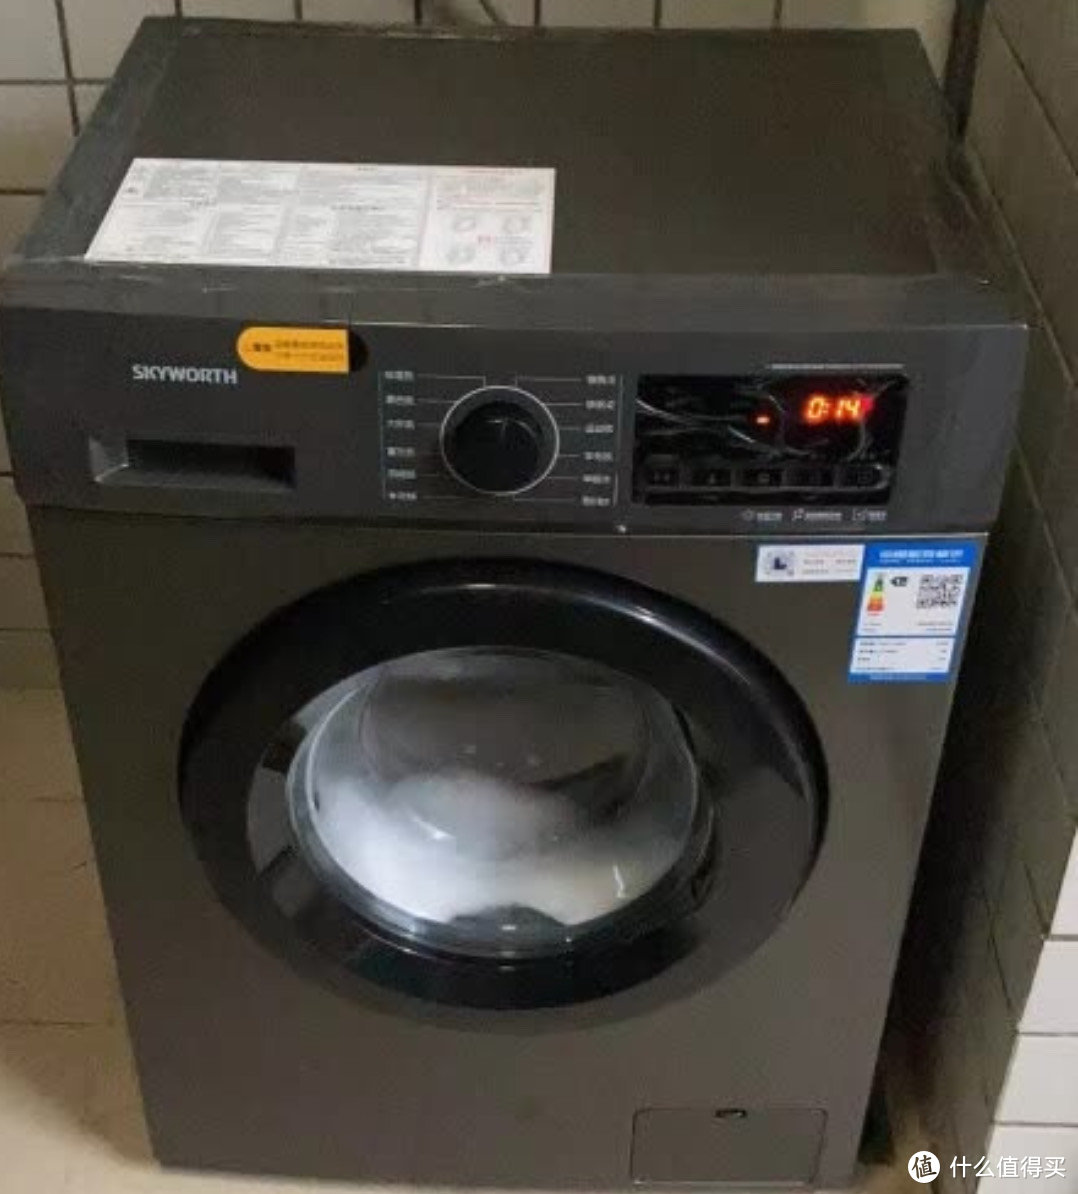 分享几款十公斤滚筒洗衣机。